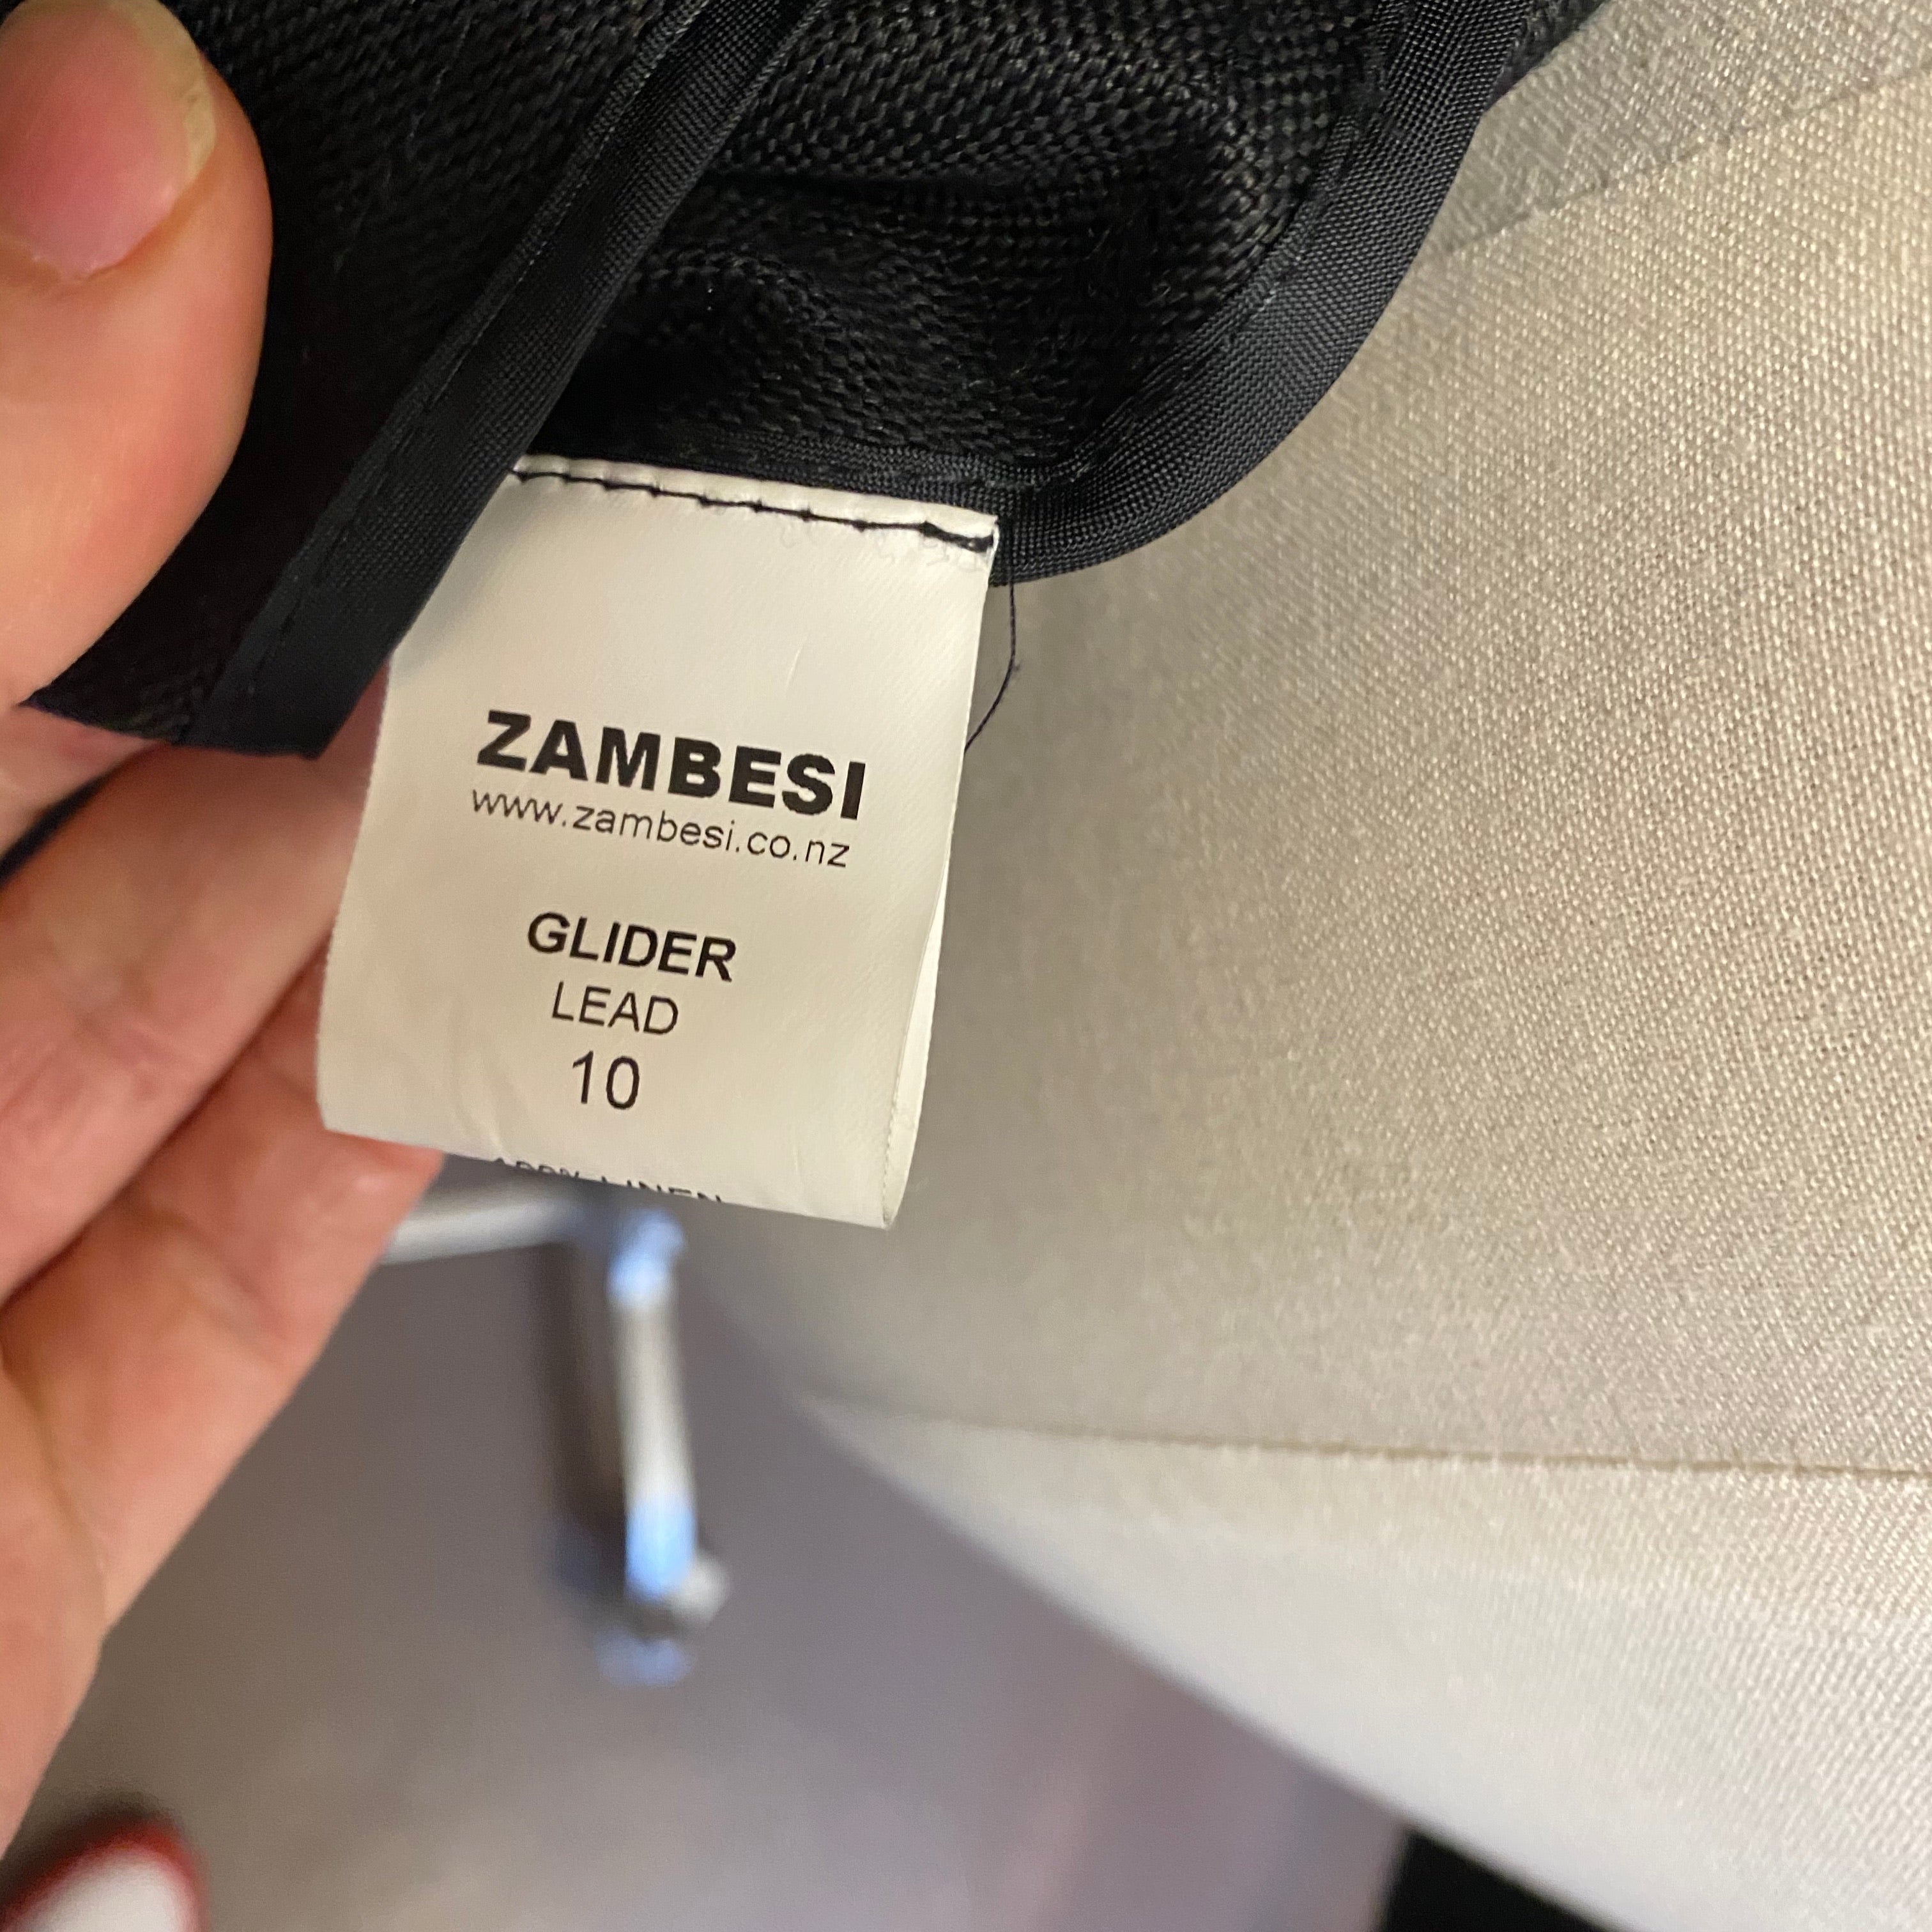 ZAMBESI linen jacket